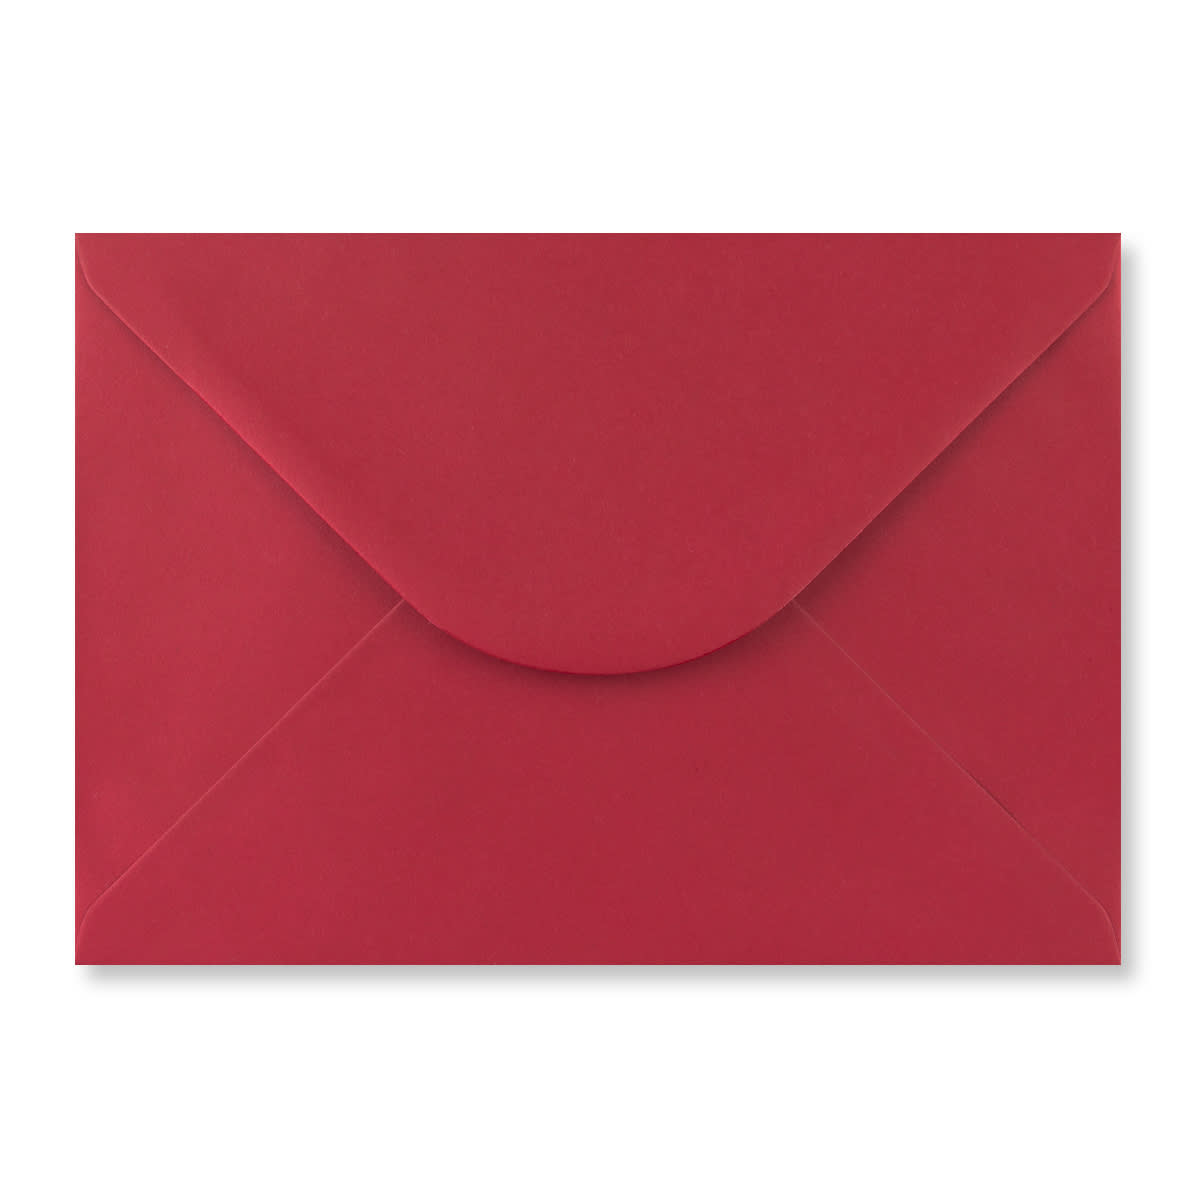 Scarlet Red 184 x 285mm Envelopes 100gsm